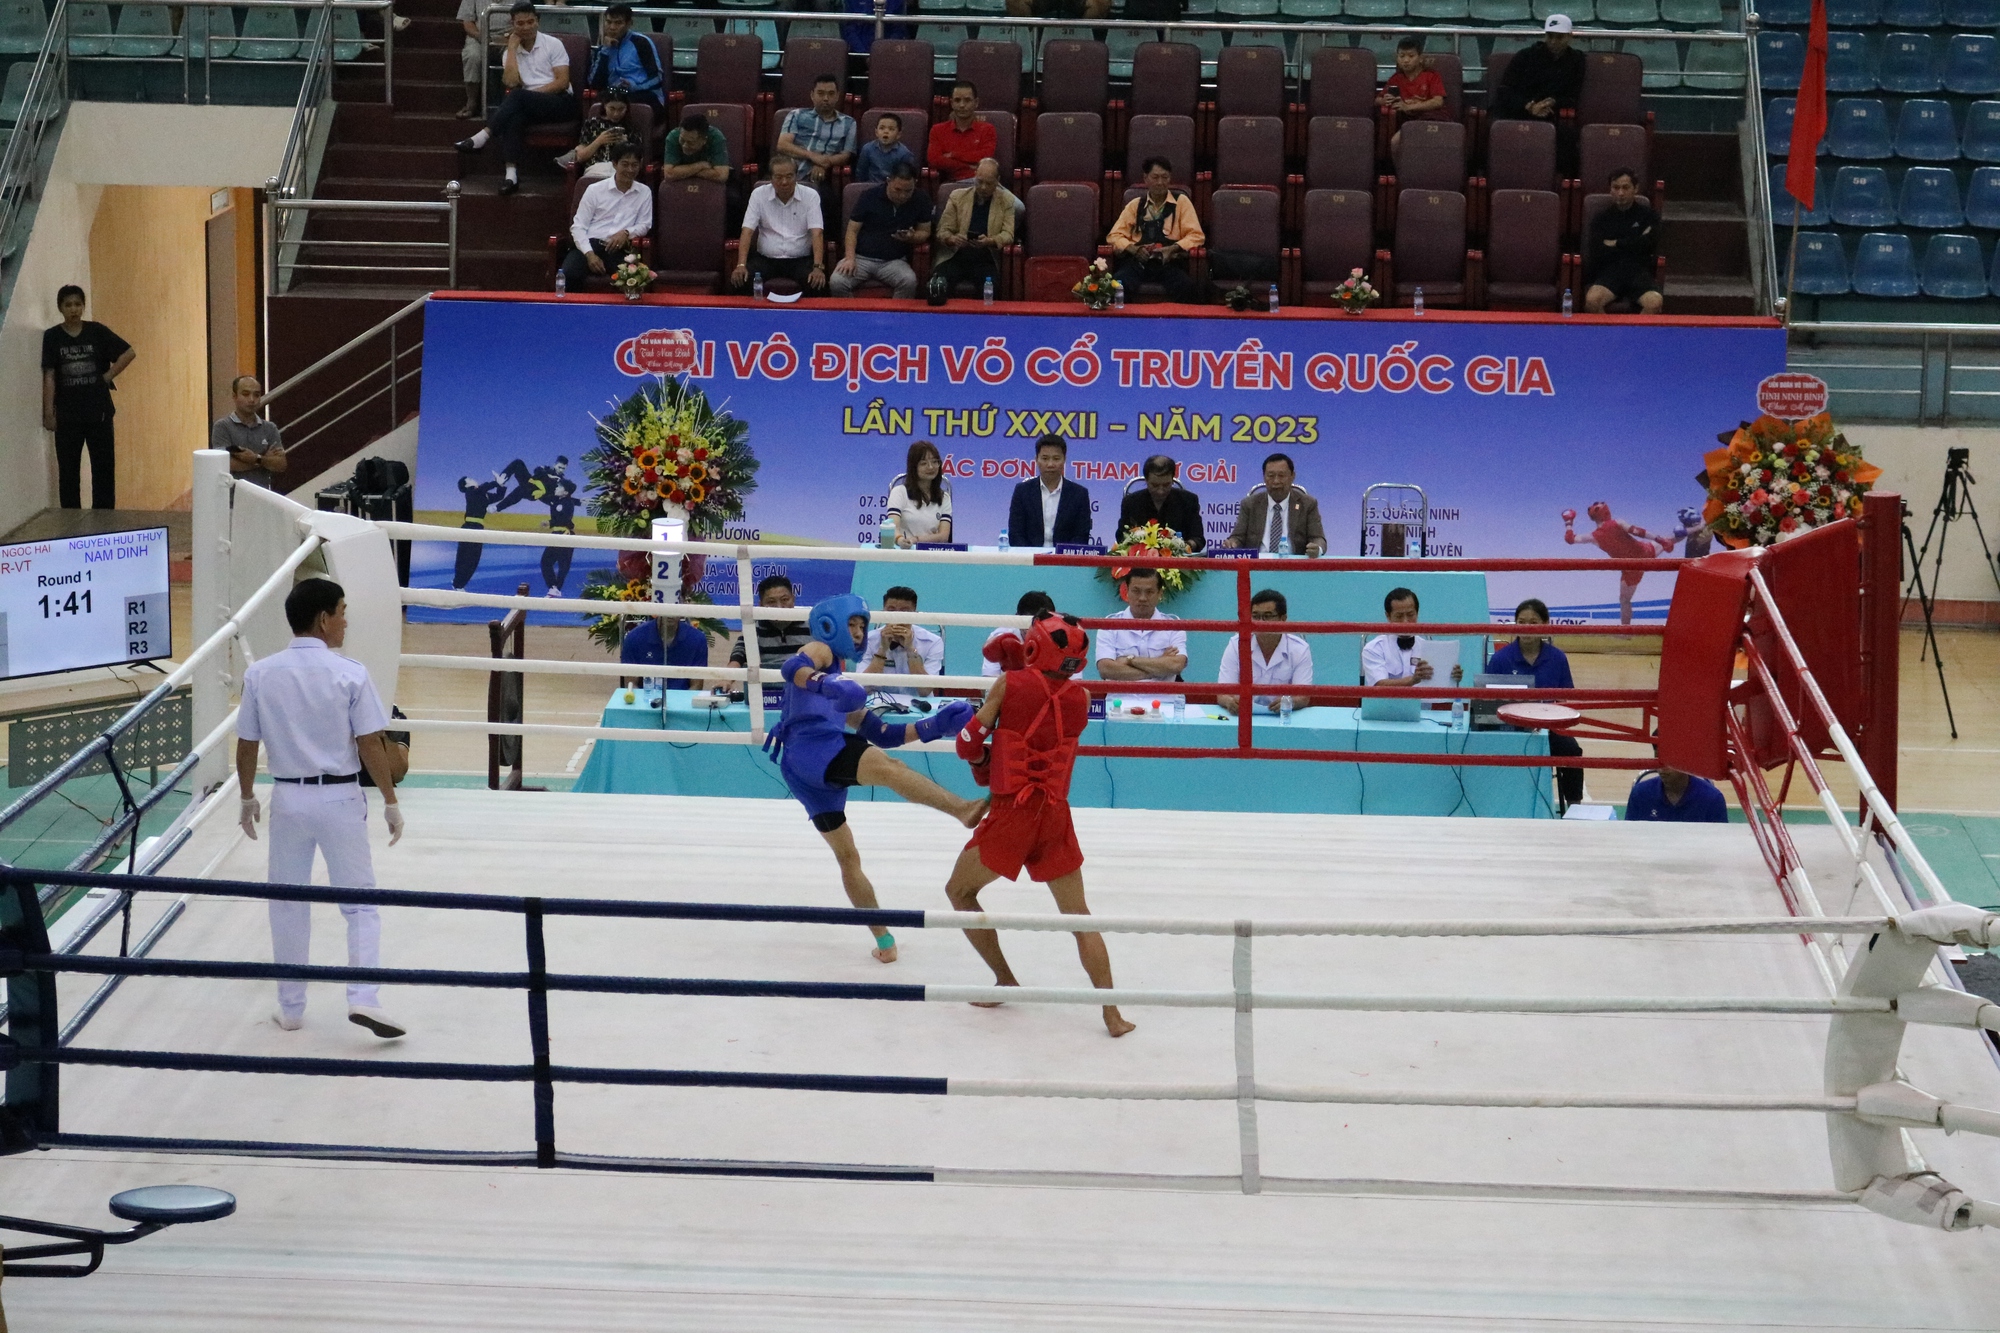 Khai mạc giải vô địch võ cổ truyền quốc gia lần thứ 32 năm 2023 - Ảnh 2.